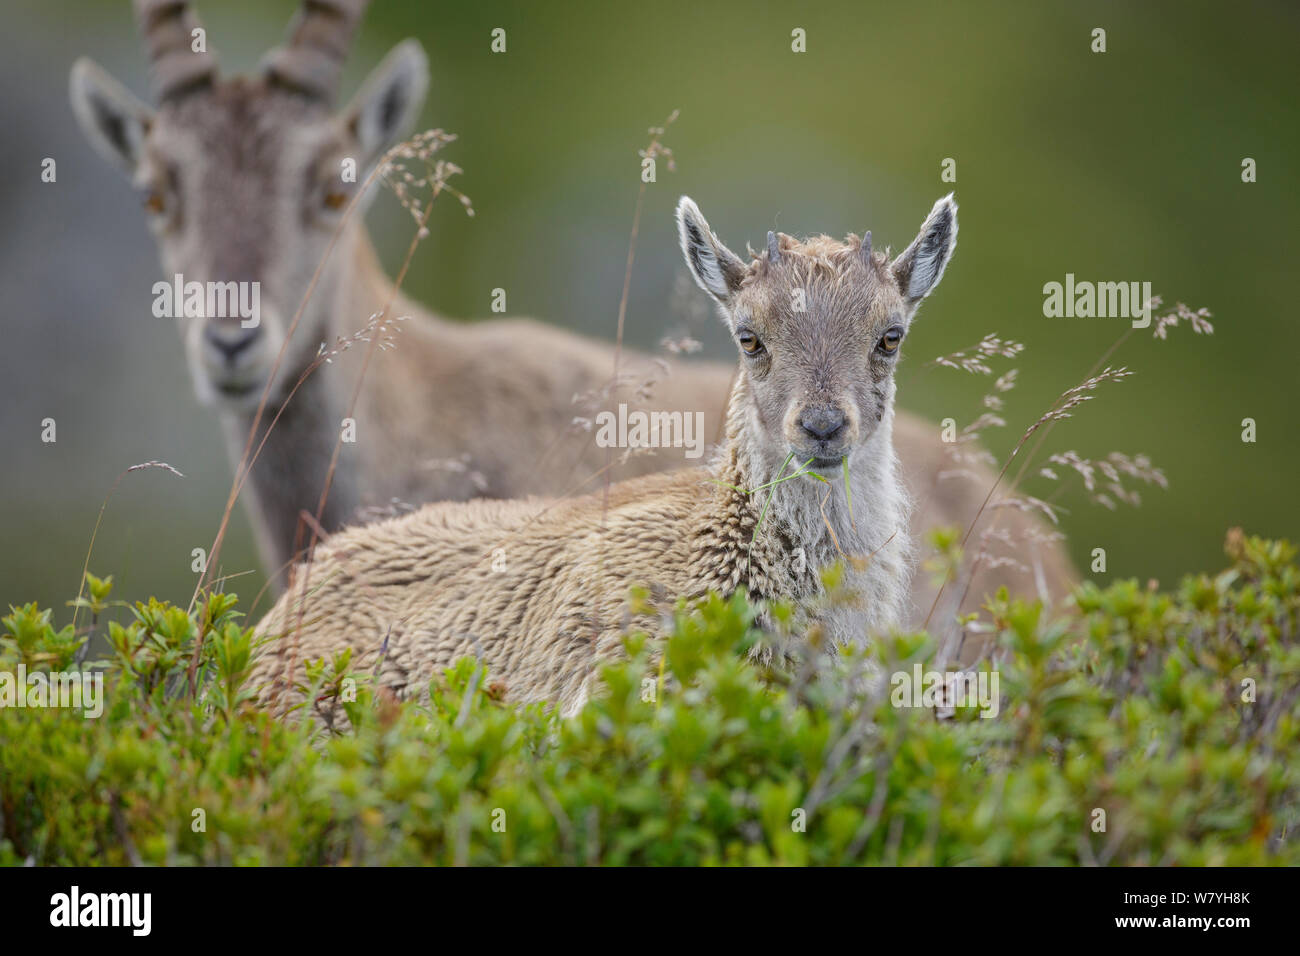 Giovane stambecco (Capra ibex) alimentazione con la madre in background. Ritratto. Alpi bernesi, Svizzera. Agosto. Foto Stock